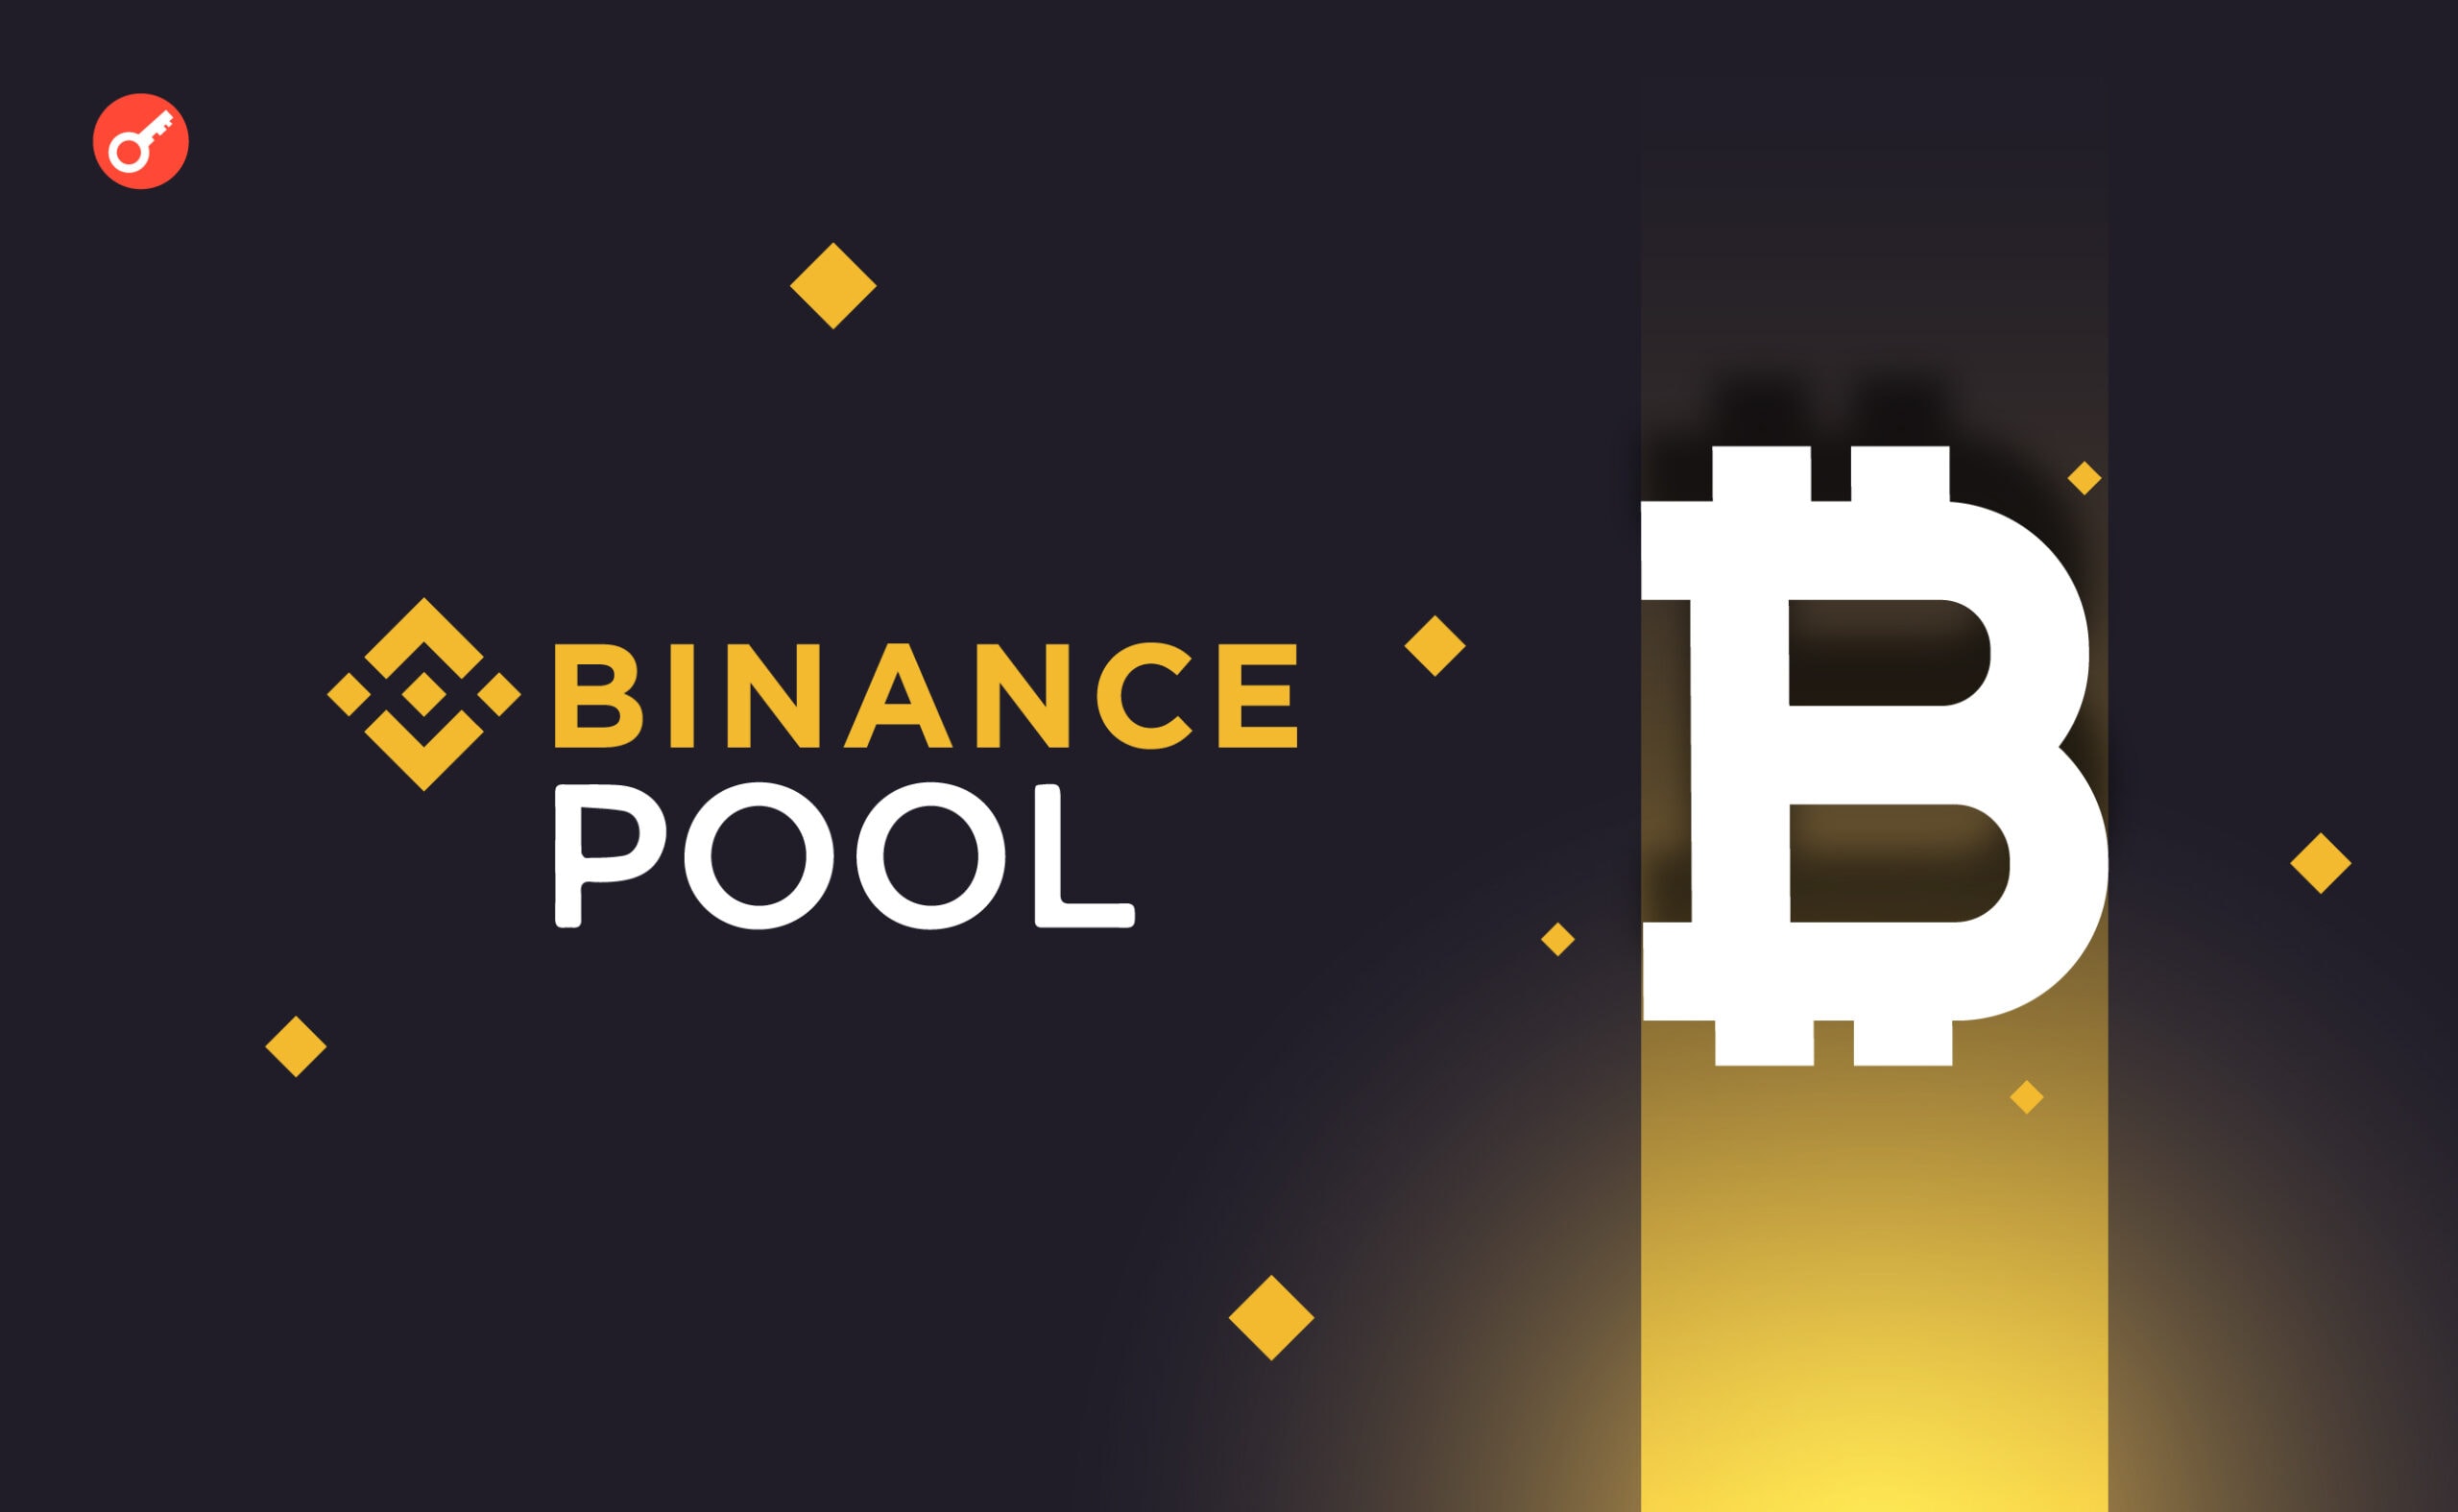 Binance Pool uruchamia usługę przyspieszającą transakcje BTC. Główny kolaż wiadomości.